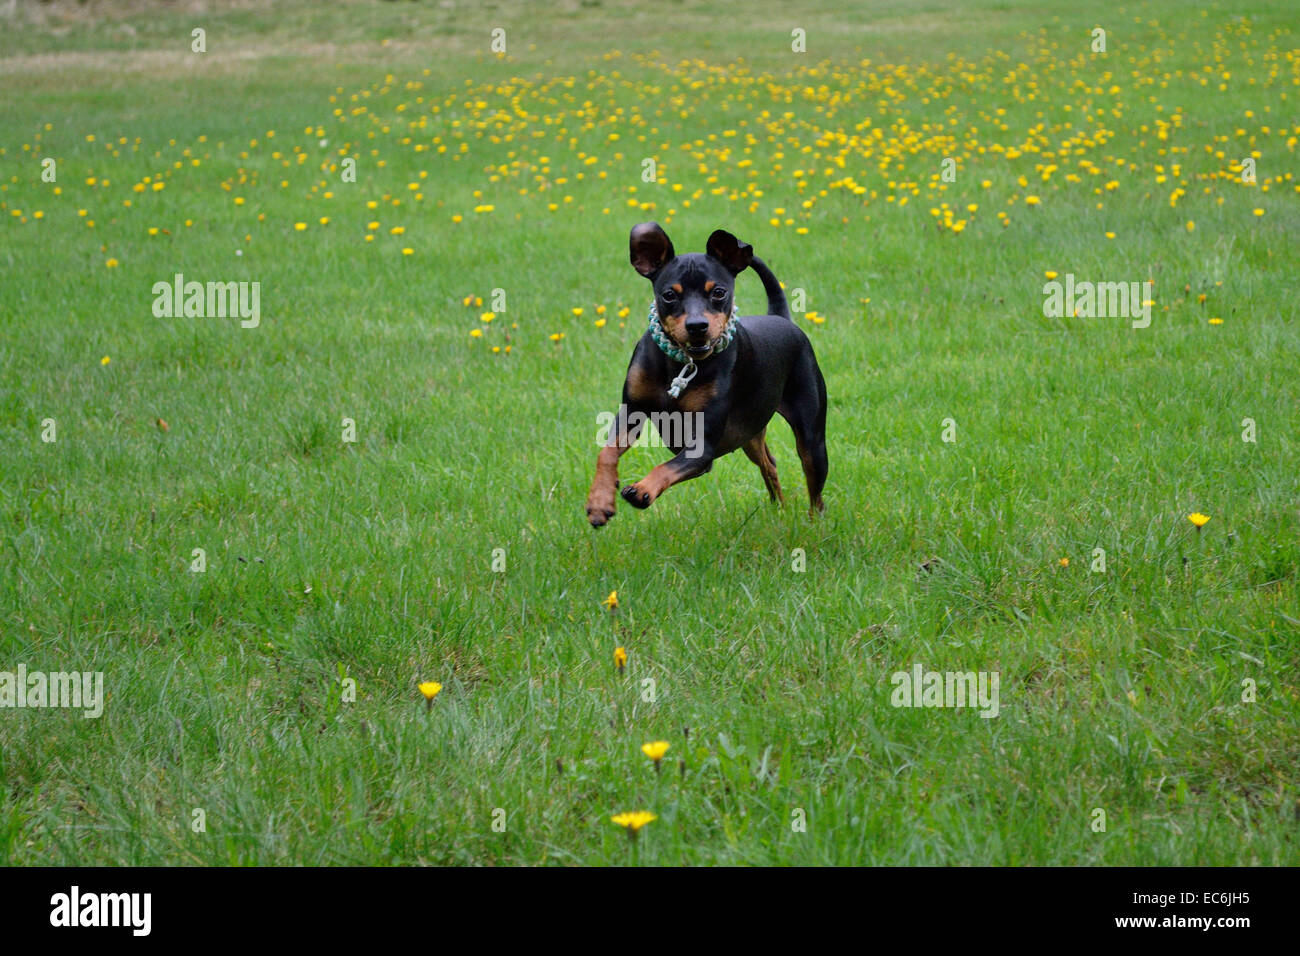 Une fédération de Toy Terrier exécutant un saut sur la prairie Banque D'Images